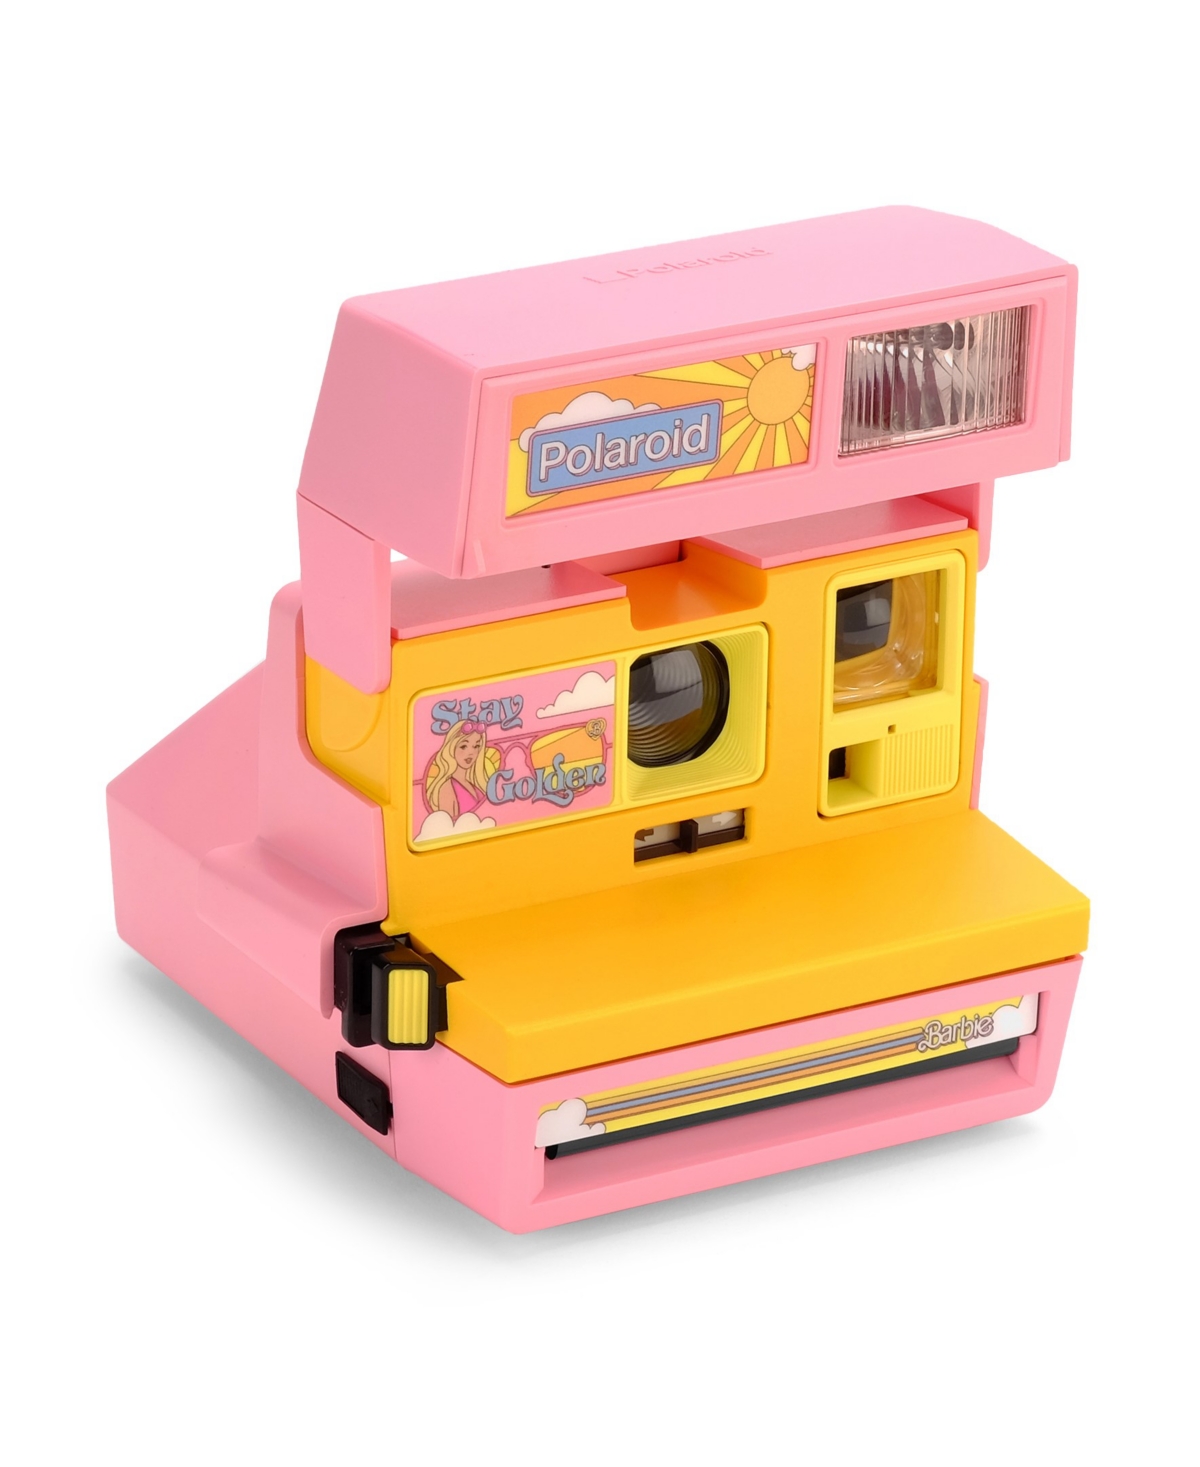 Retrospekt Polaroid 600 Camera In Pink